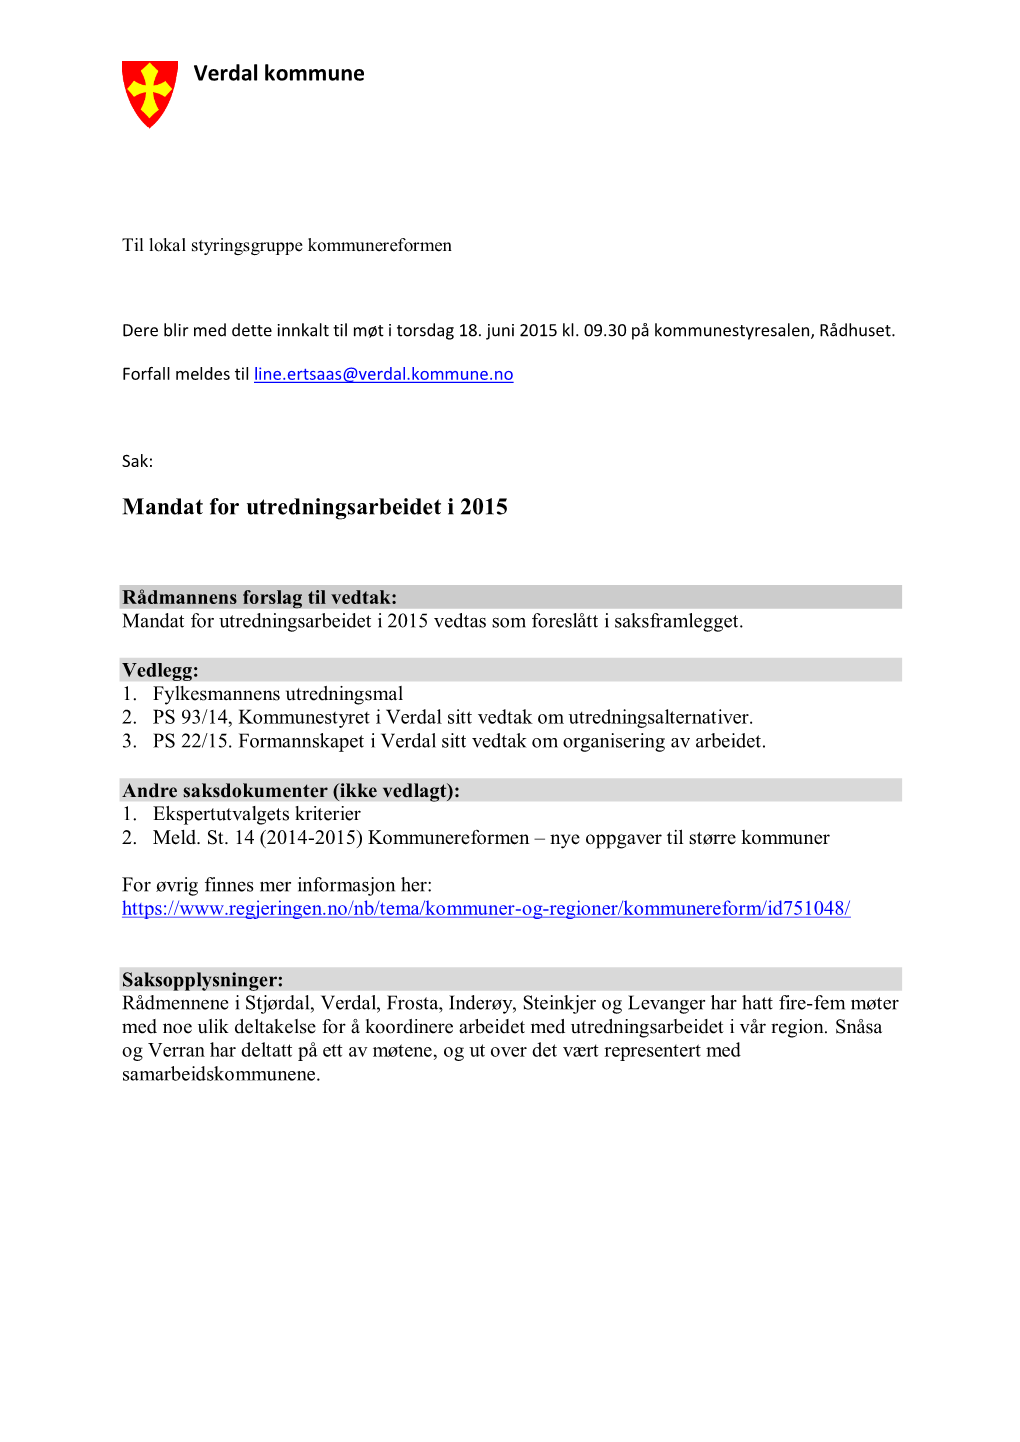 Verdal Kommune Mandat for Utredningsarbeidet I 2015